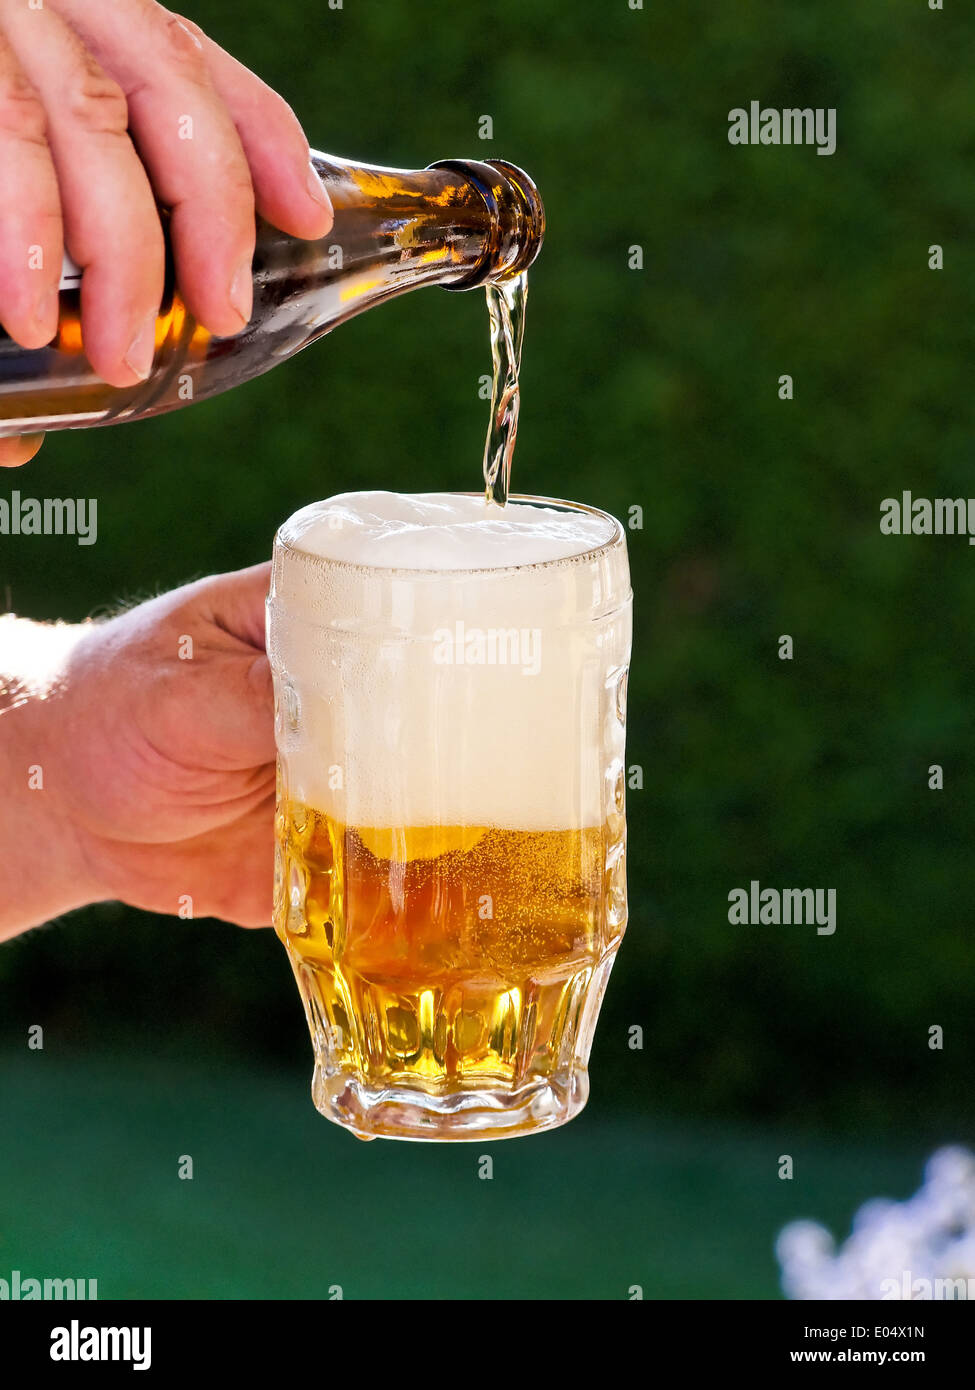 Fresh beer from a beer bottle is poured out in beer glass, Frisches Bier aus einer Bierflasche wird in Bierglas eingeschenkt Stock Photo